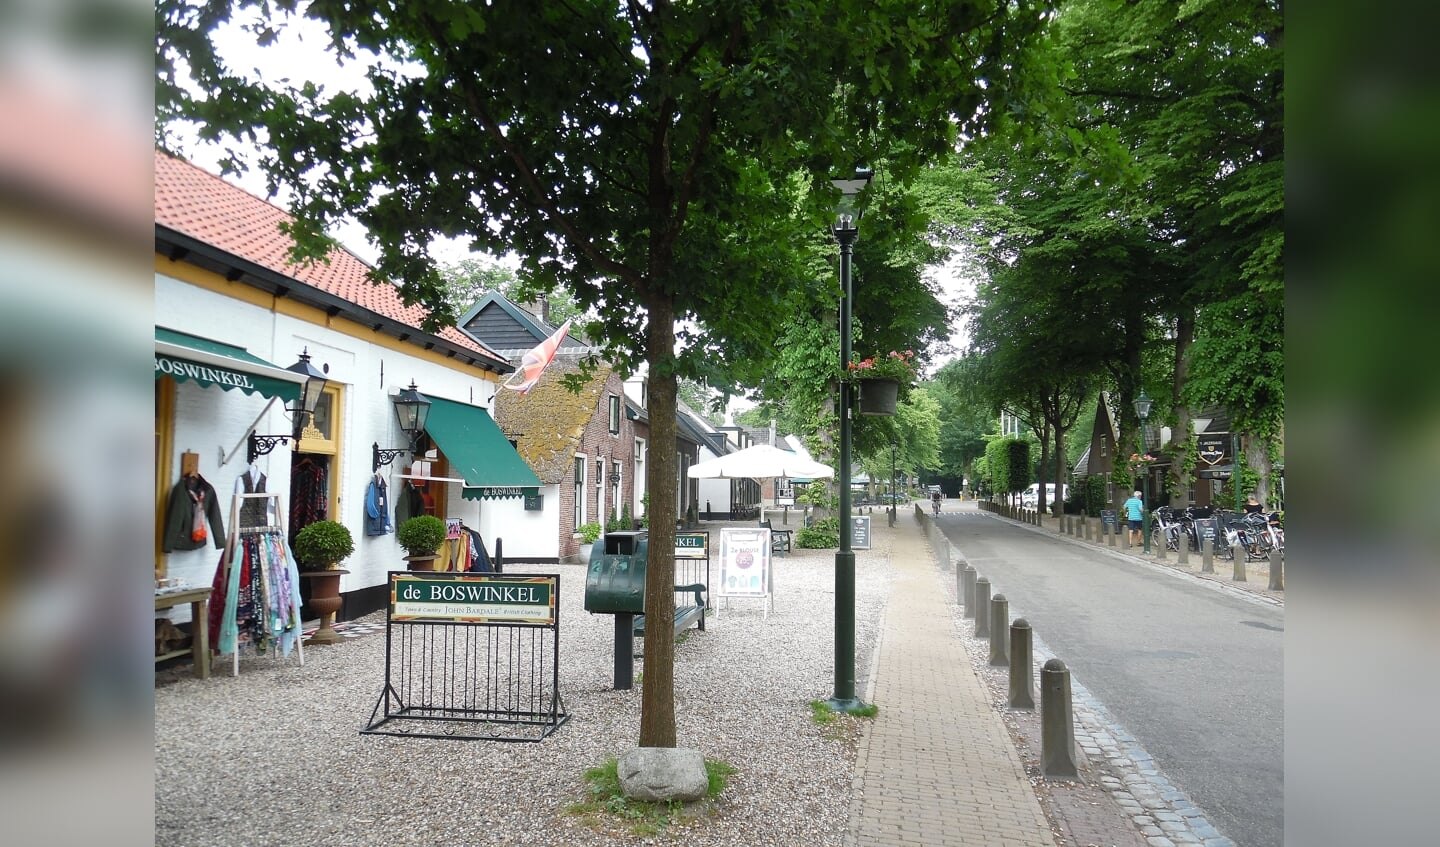 De grens bereikt via de Koudelaan Lage Vuursche (Dorpsstraat) en loopt iets ten westen van het dorp verder zuidwaarts door het bos. Hierbij worden resp. de Maartensdijkseweg en de Soestdijkseweg gekruist..